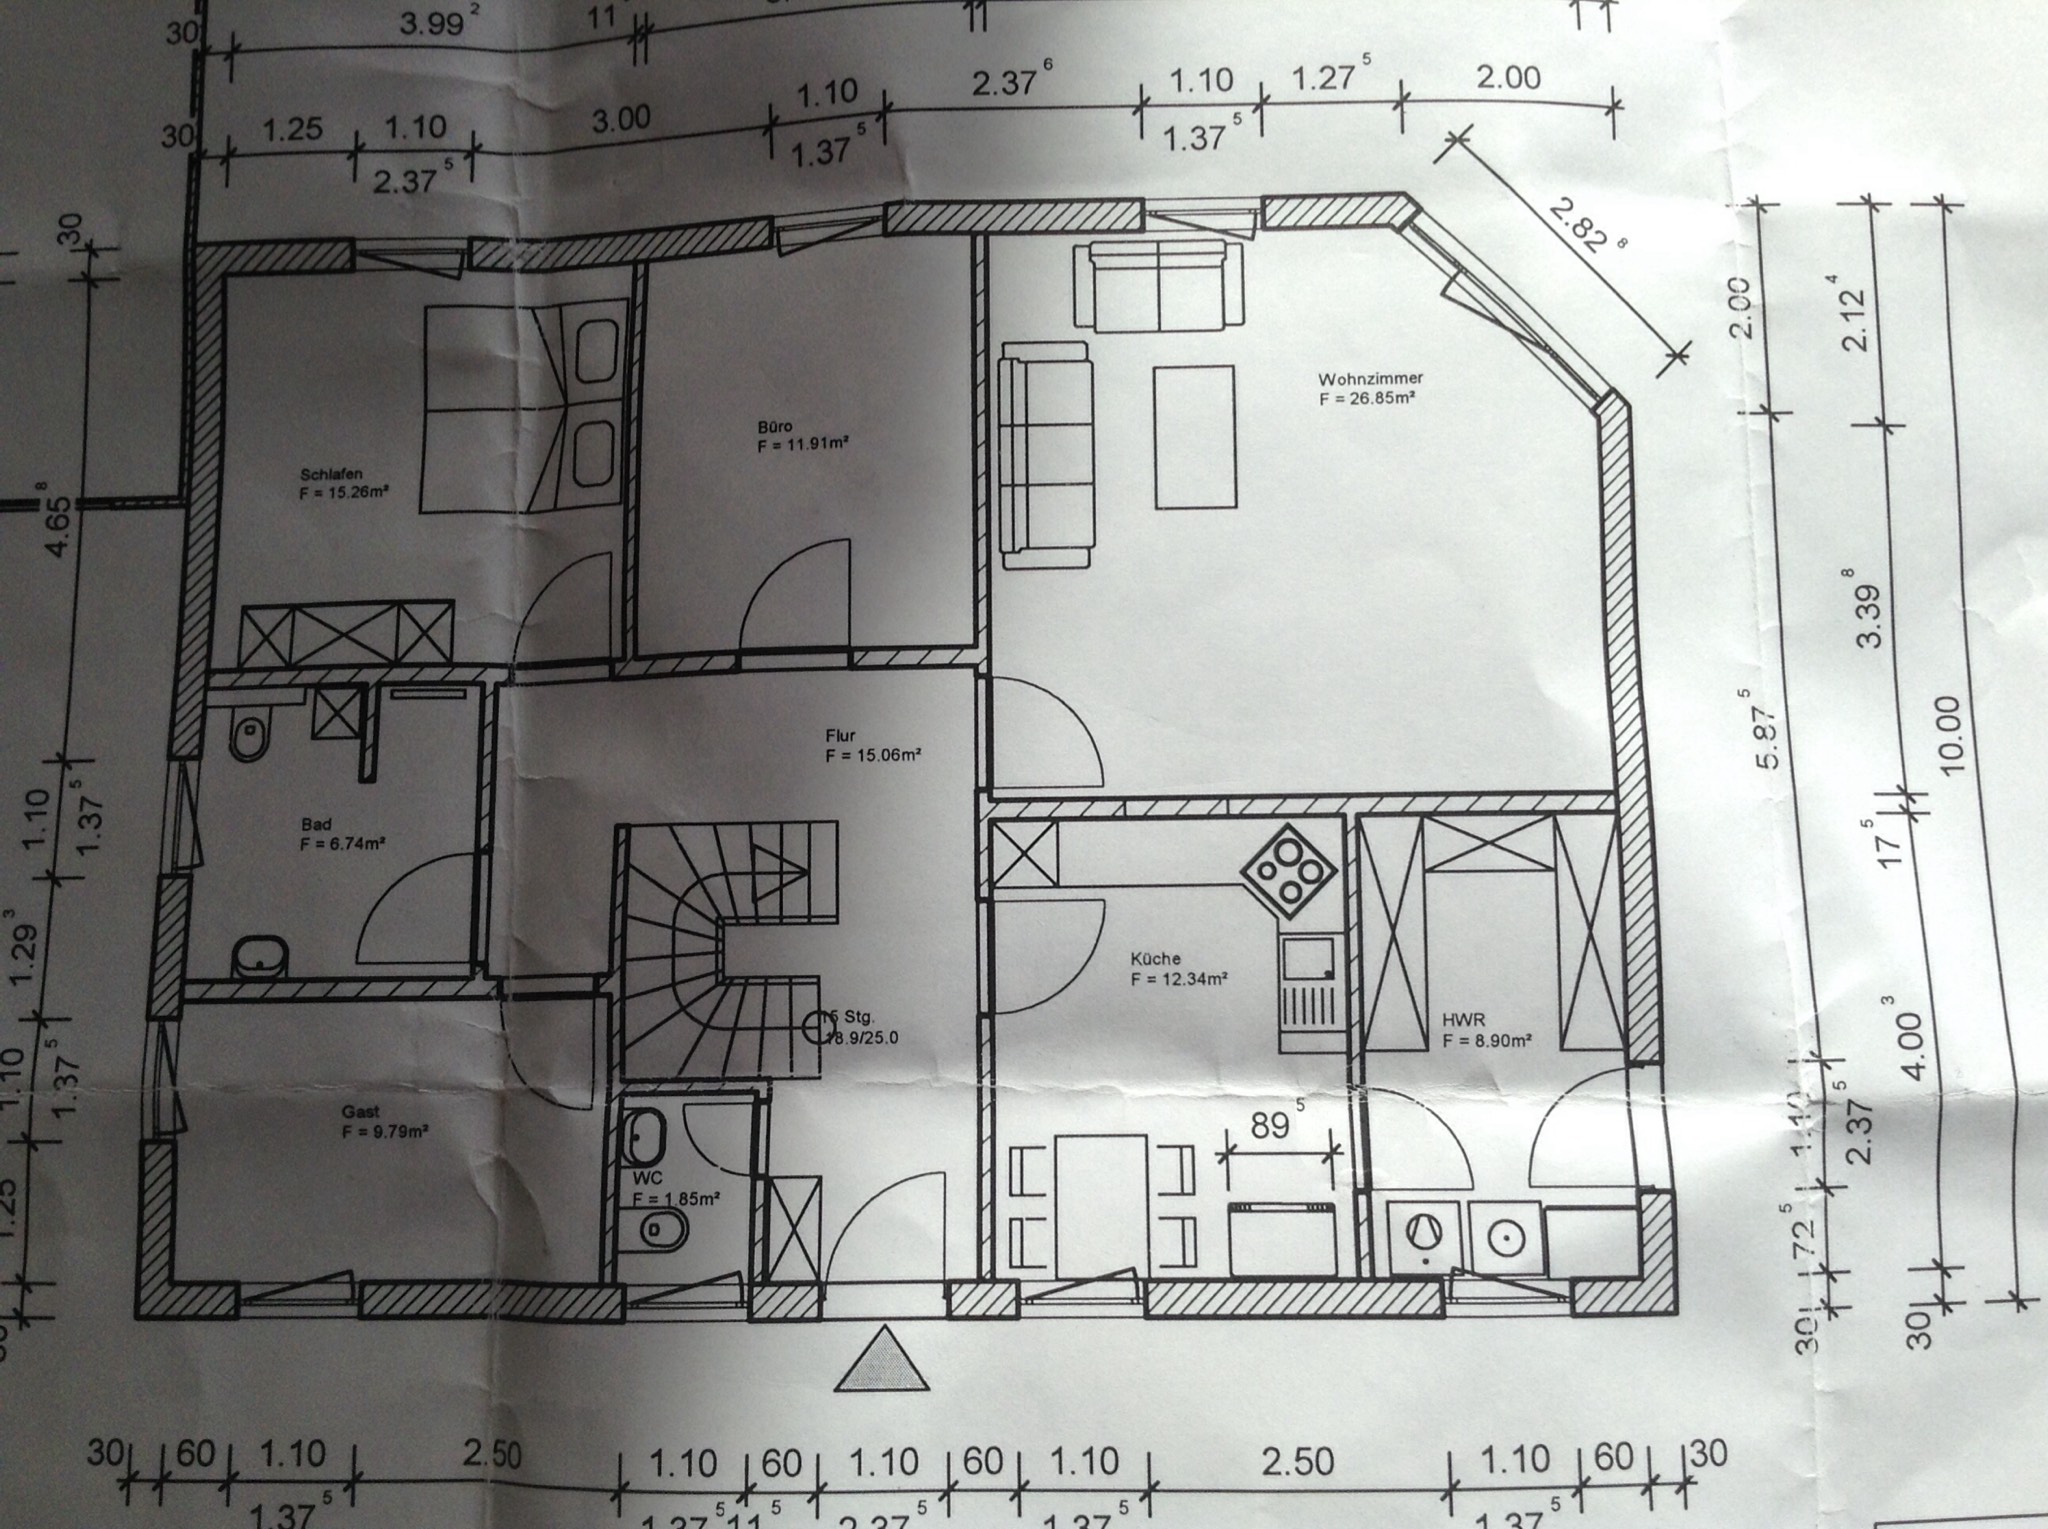 kleiner-bungalow-mit-100qm-bauen-vorstellung-realistisch-257017-2.JPG